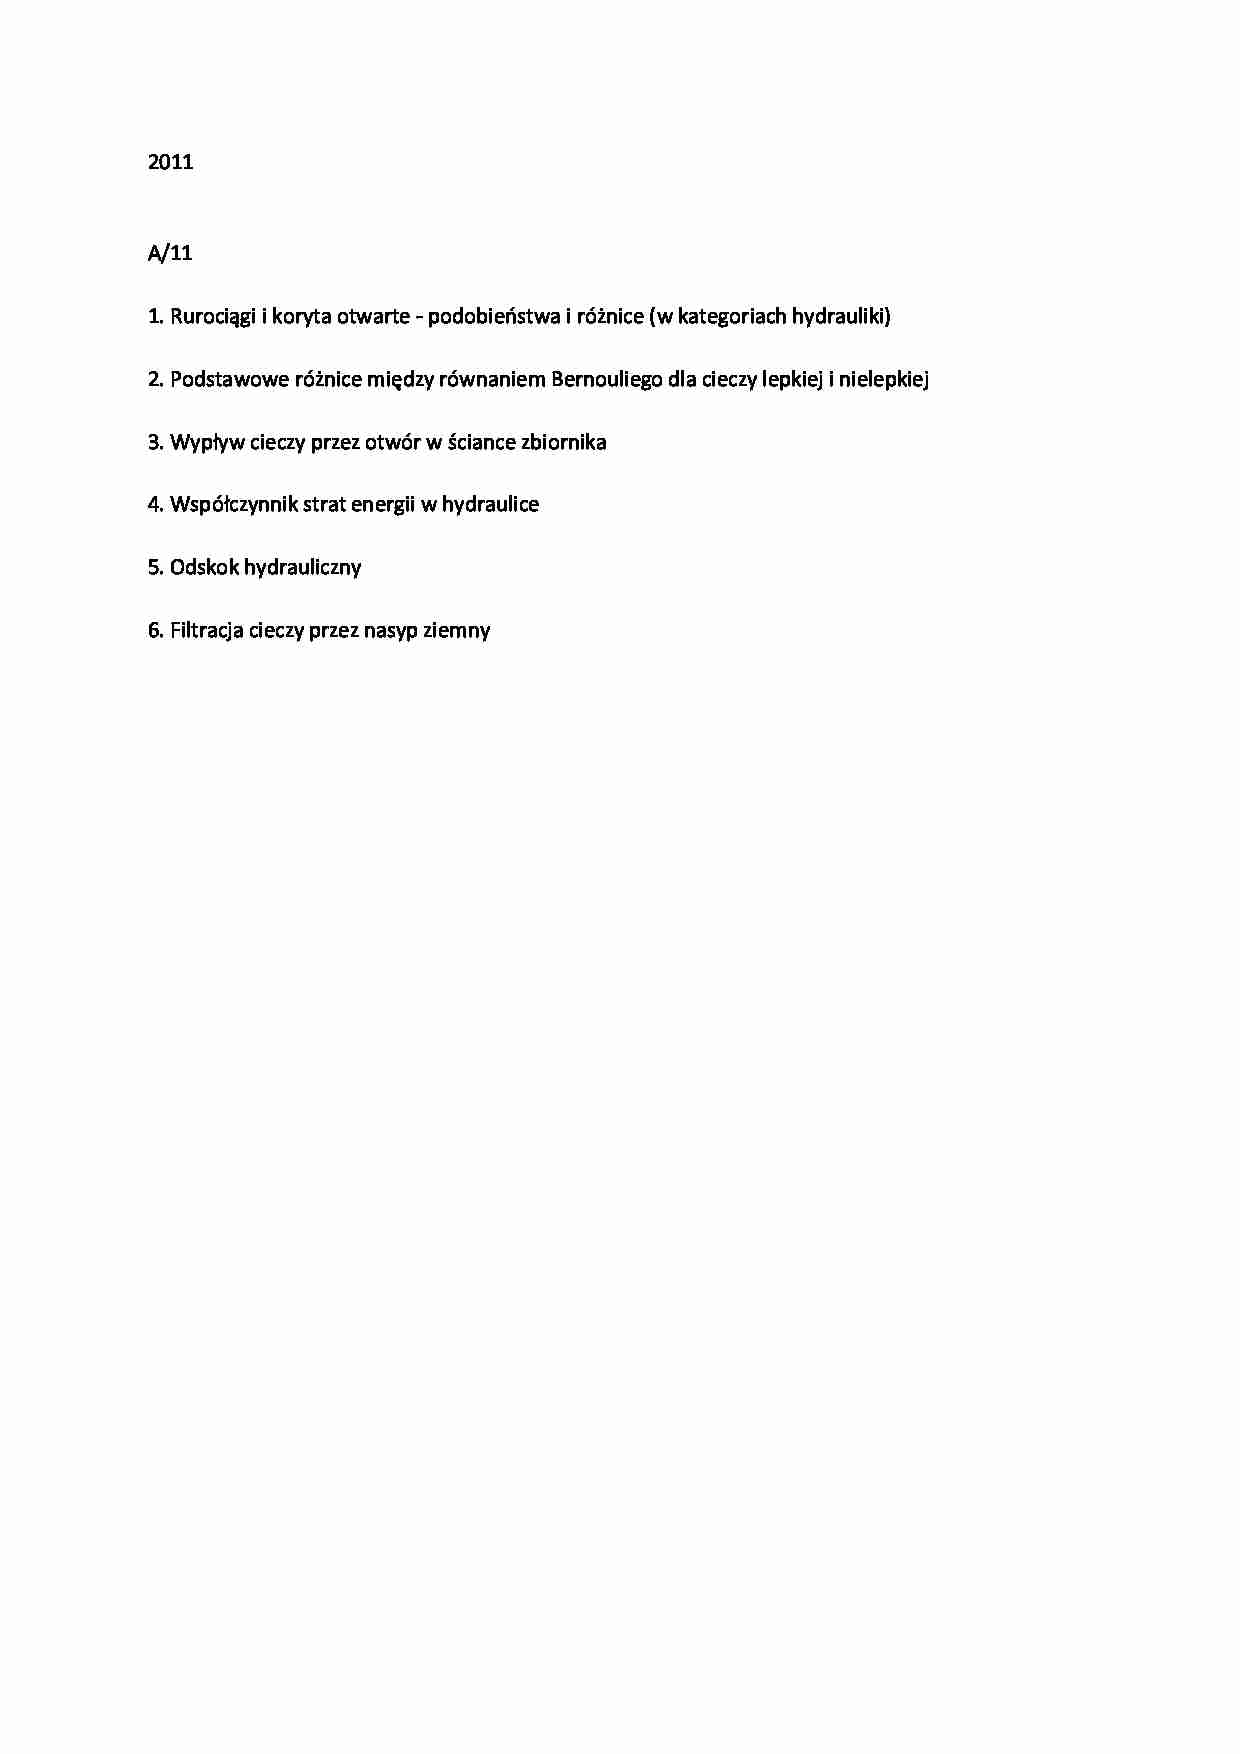 Hydraulika-egzamin z 2011 A11 - strona 1